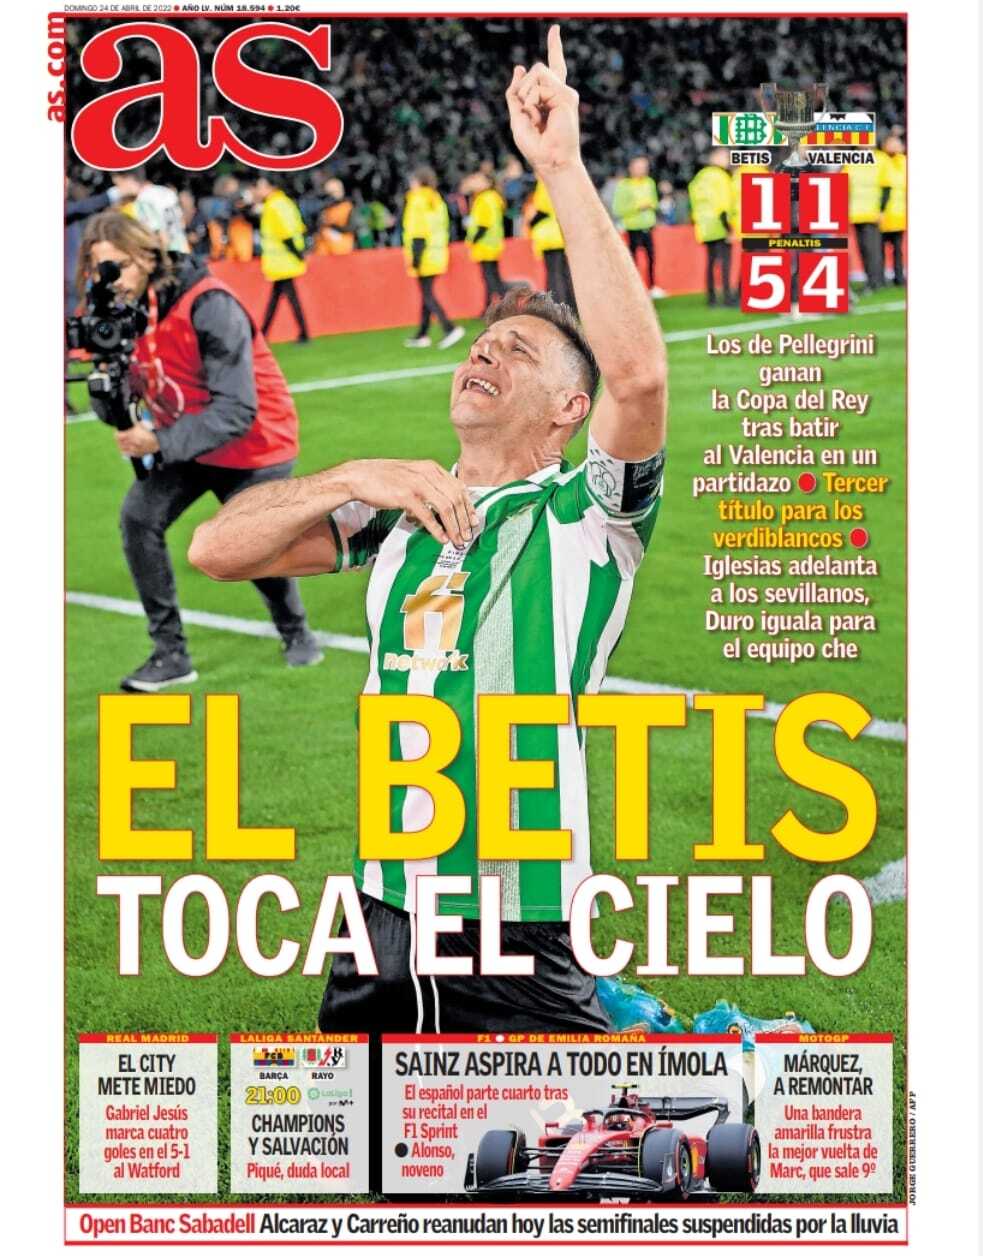 La portada del periódico AS (domingo, 24 de del 2022): "El Betis toca el cielo"